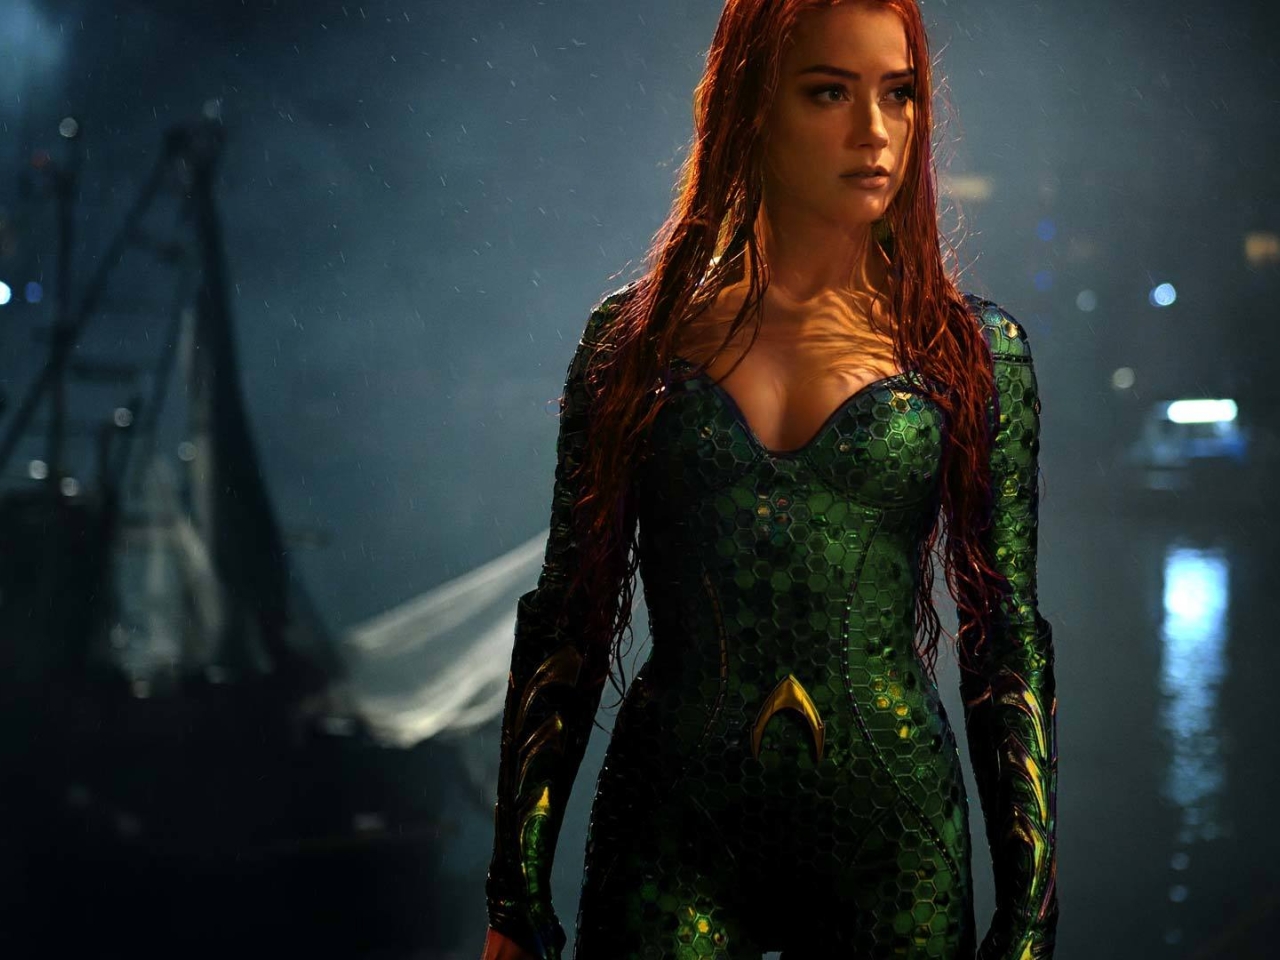 Amber Heard As Mera In Aquaman, Full HD Wallpaper1280 x 960